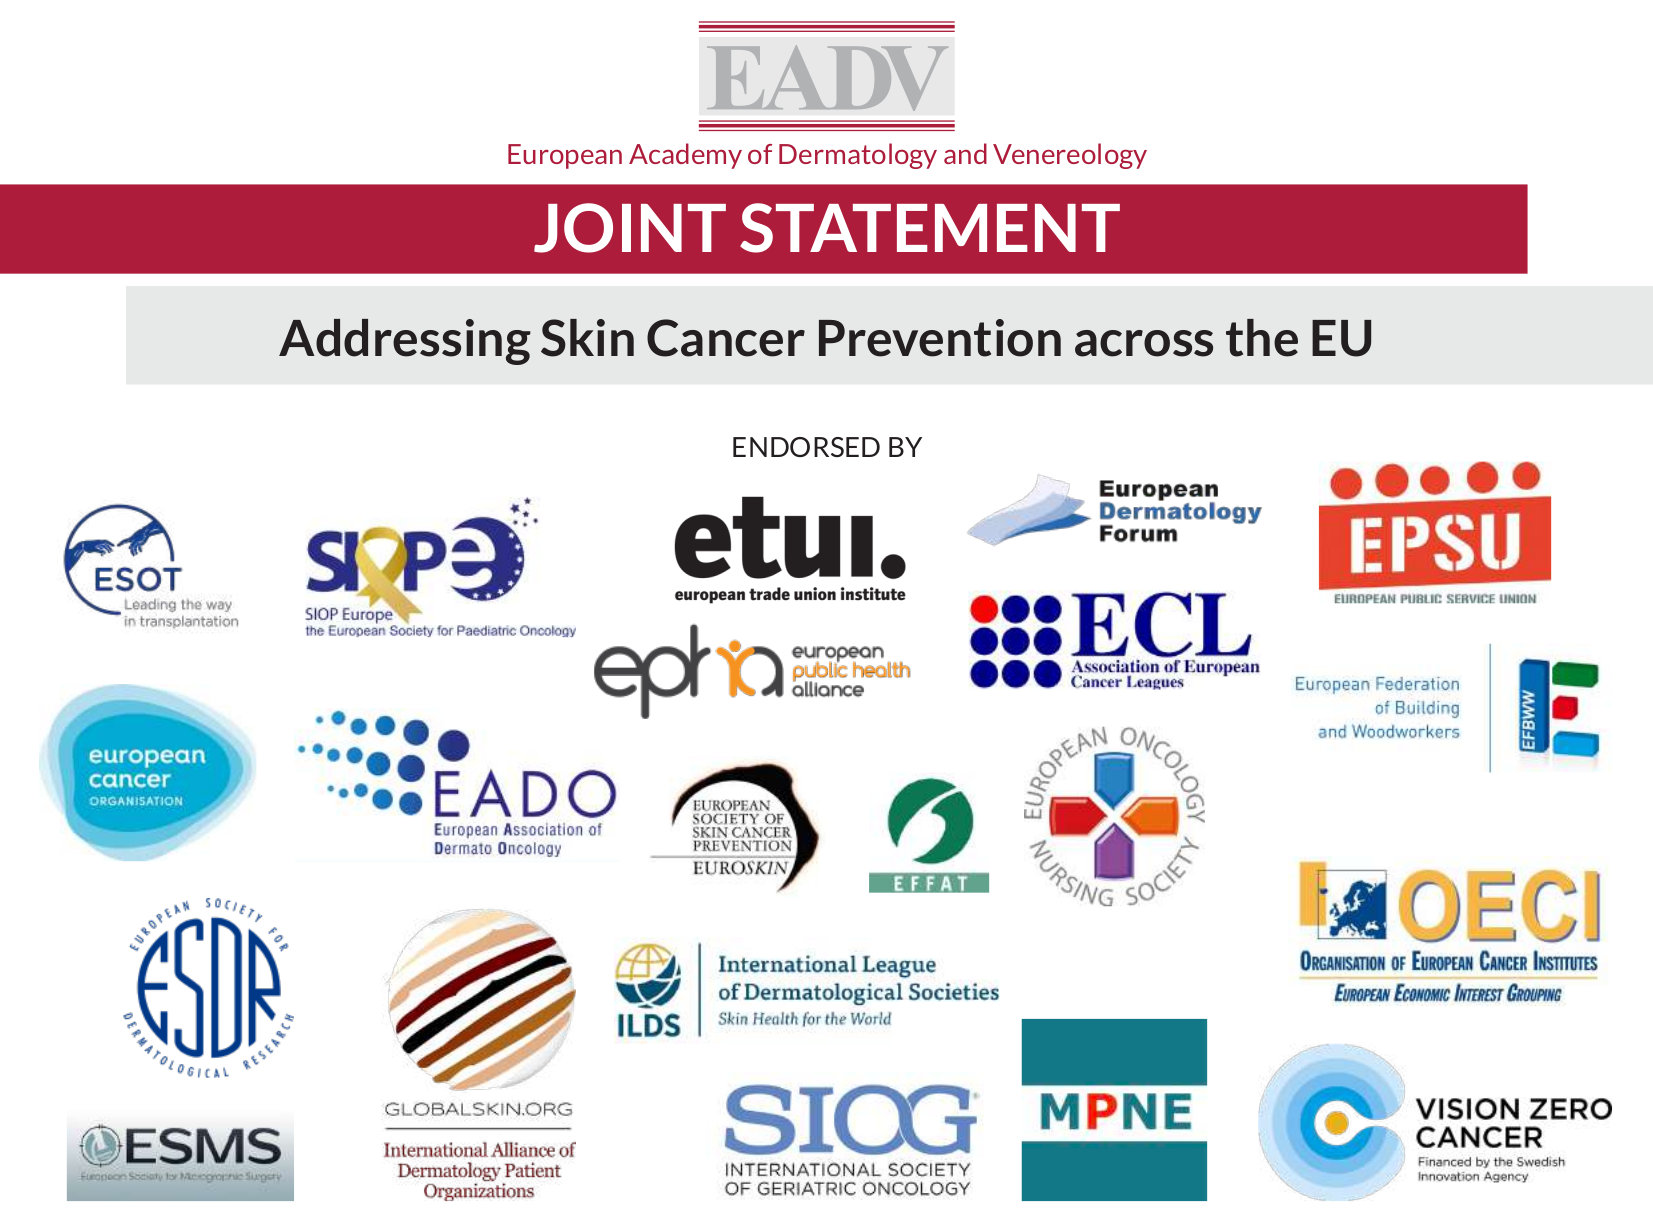 Accordo congiunto sulla prevenzione dei tumori cutanei pubblicato dalla EADV